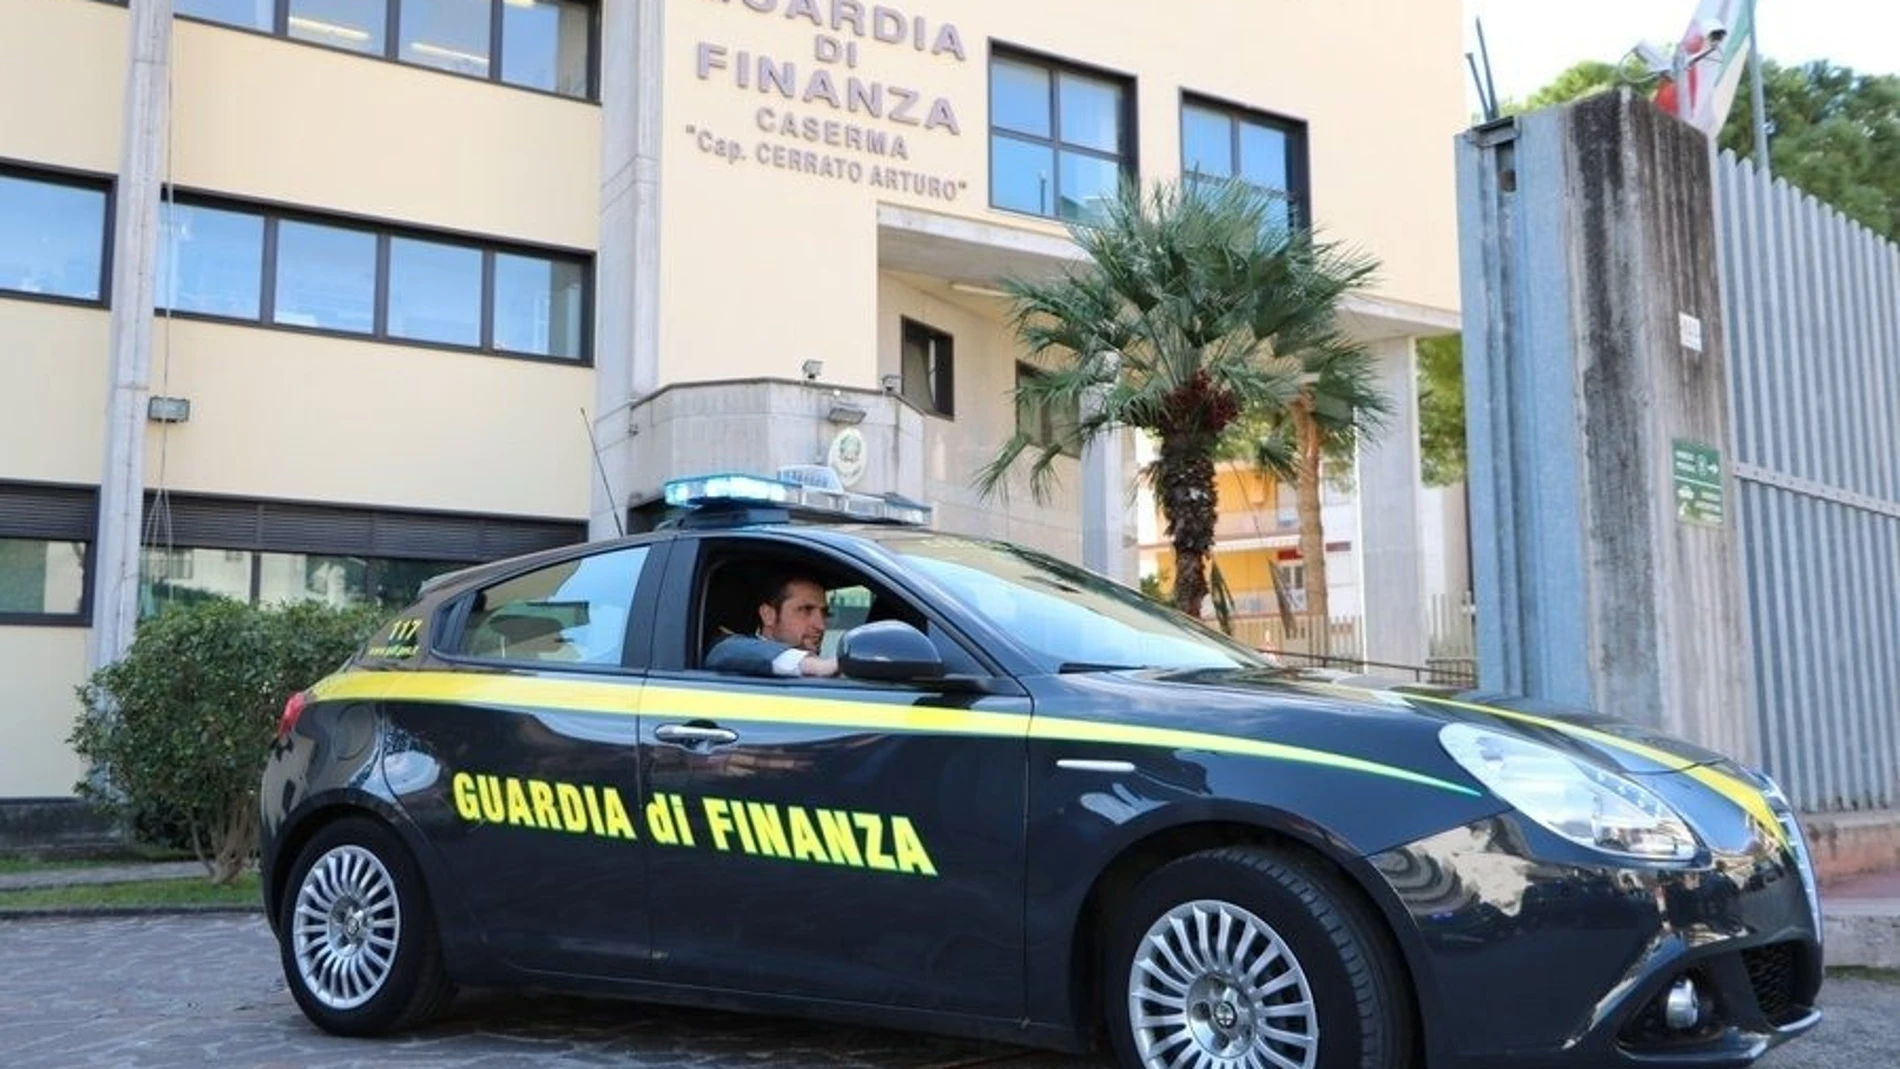 Italia.- Más de 90 detenidos en una operación contra la mafia en Italia, incluido un exconcursante de Gran Hermano